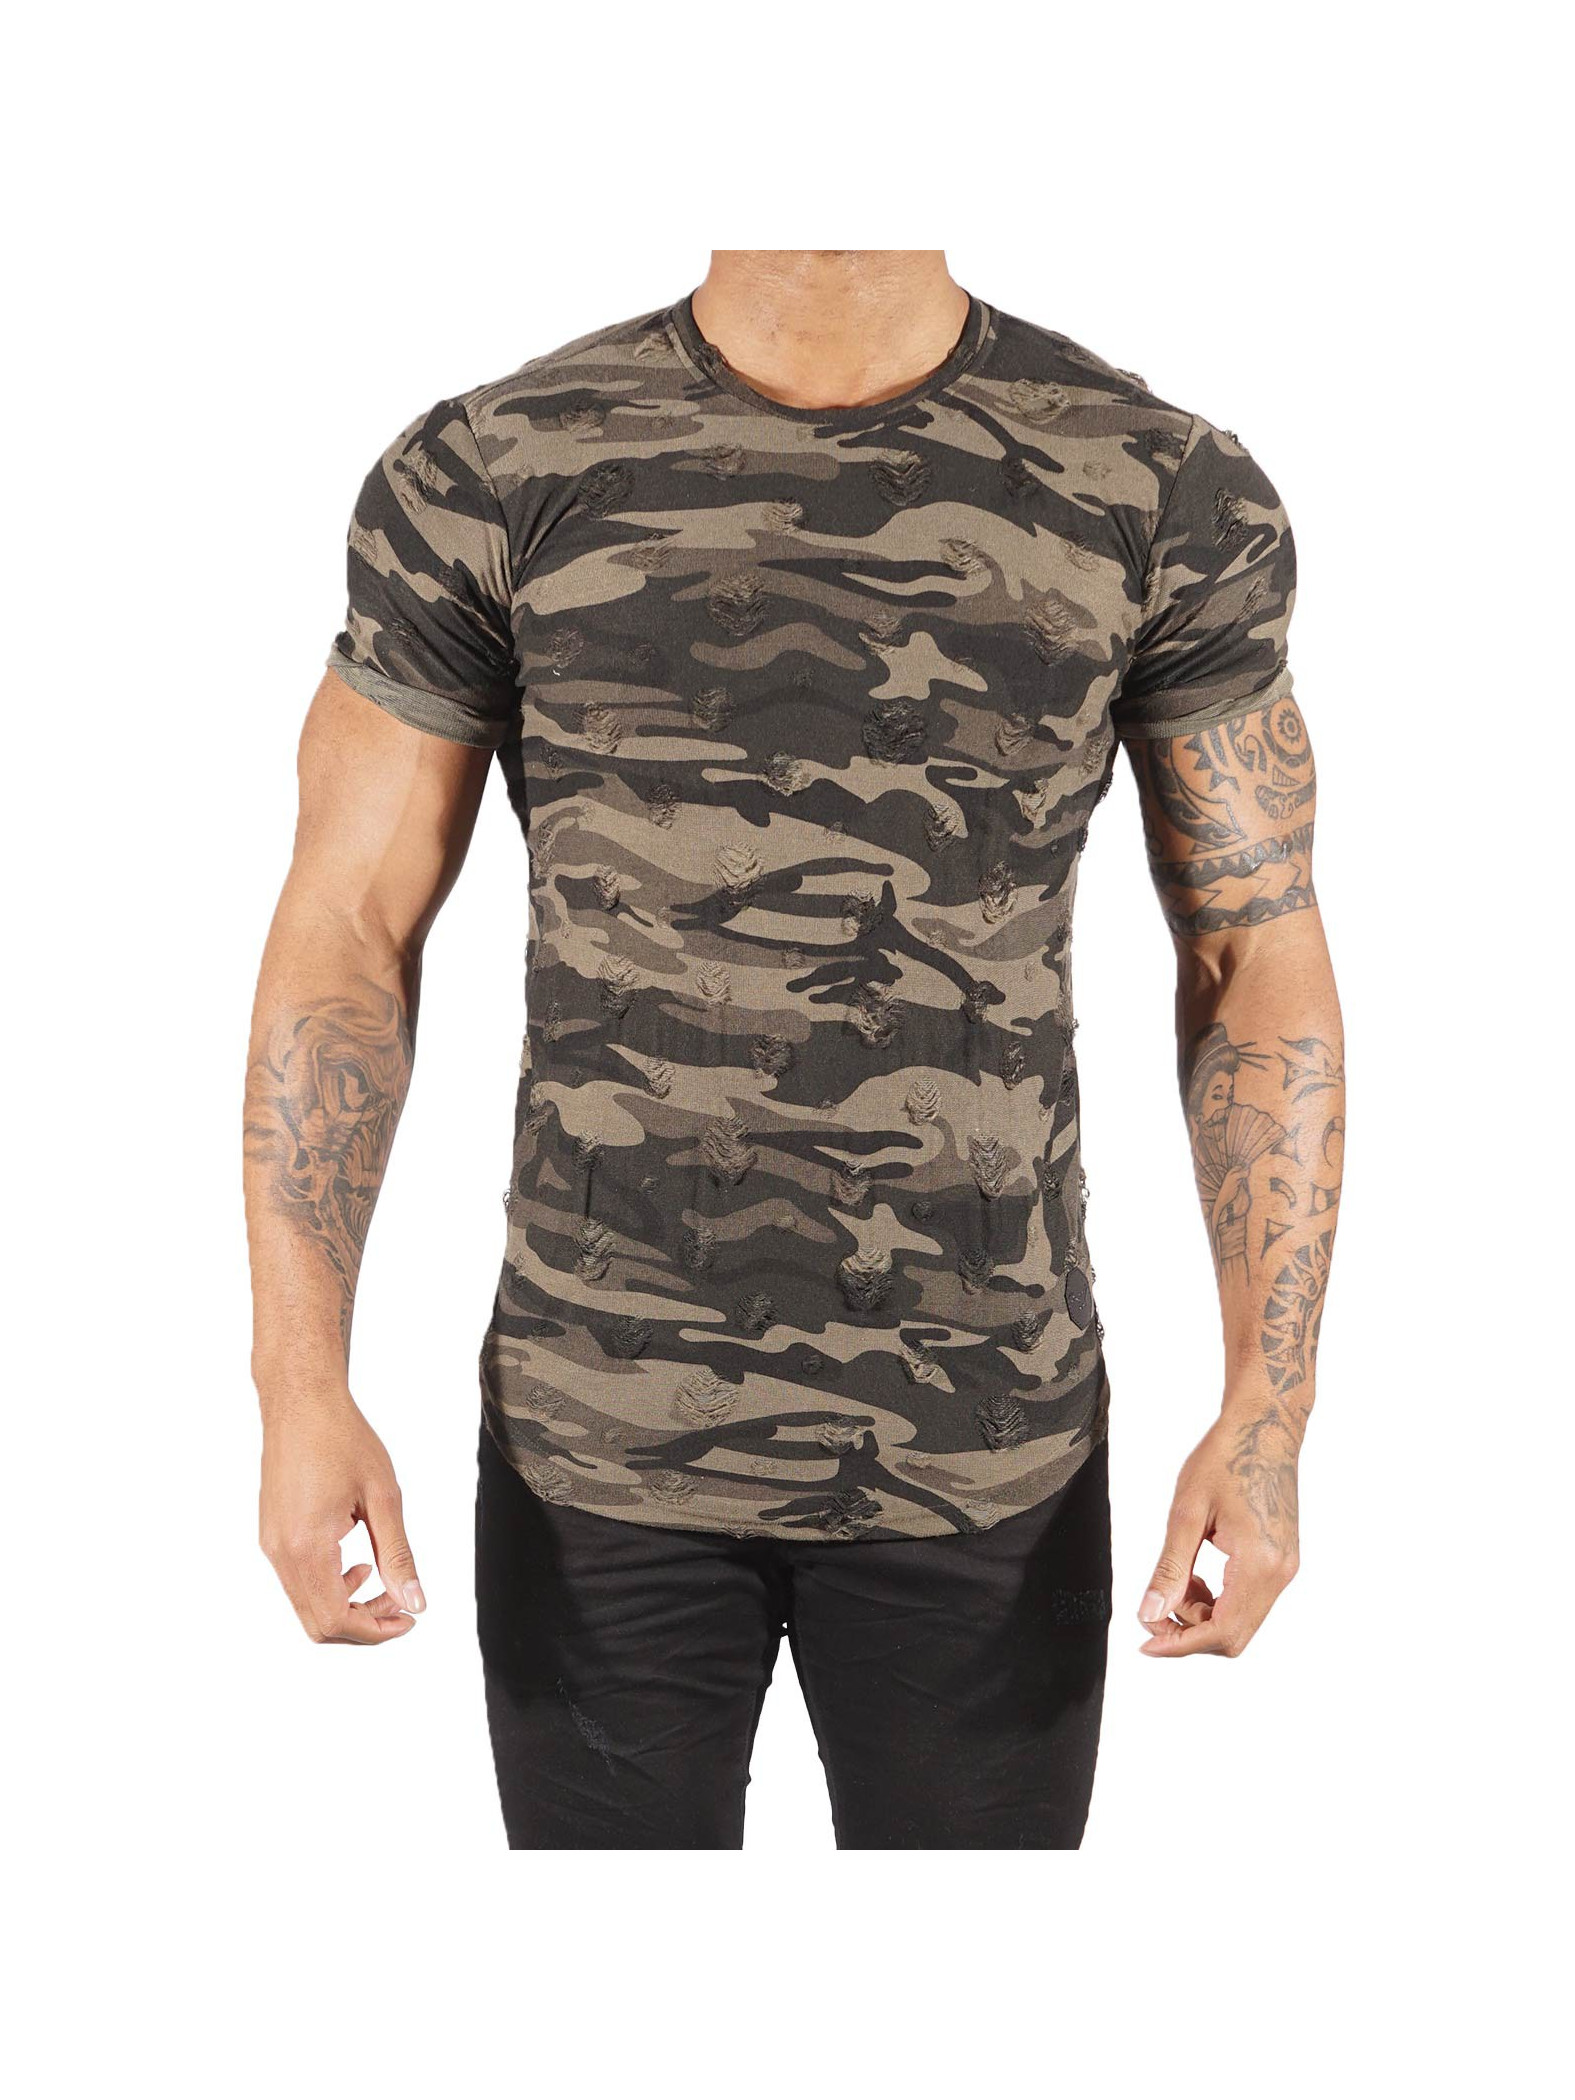 Men's Camouflage T-Shirt Project X Paris